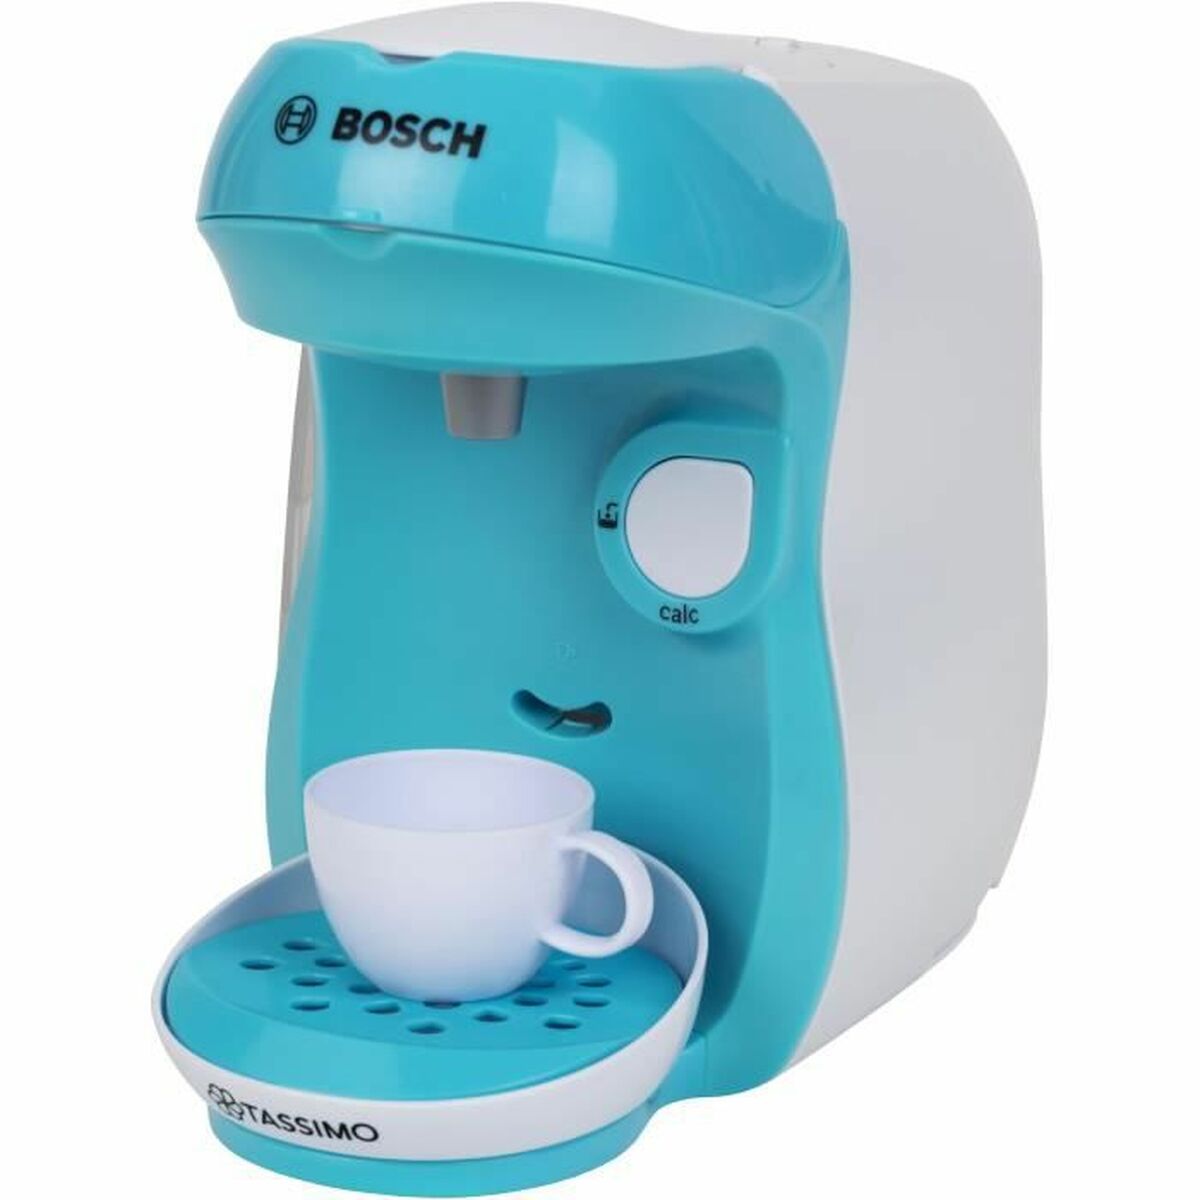 Spielzeug-Haushaltsgerät Klein Bosch + 3 jahre Zubehör Elektrische Kaffeemaschine